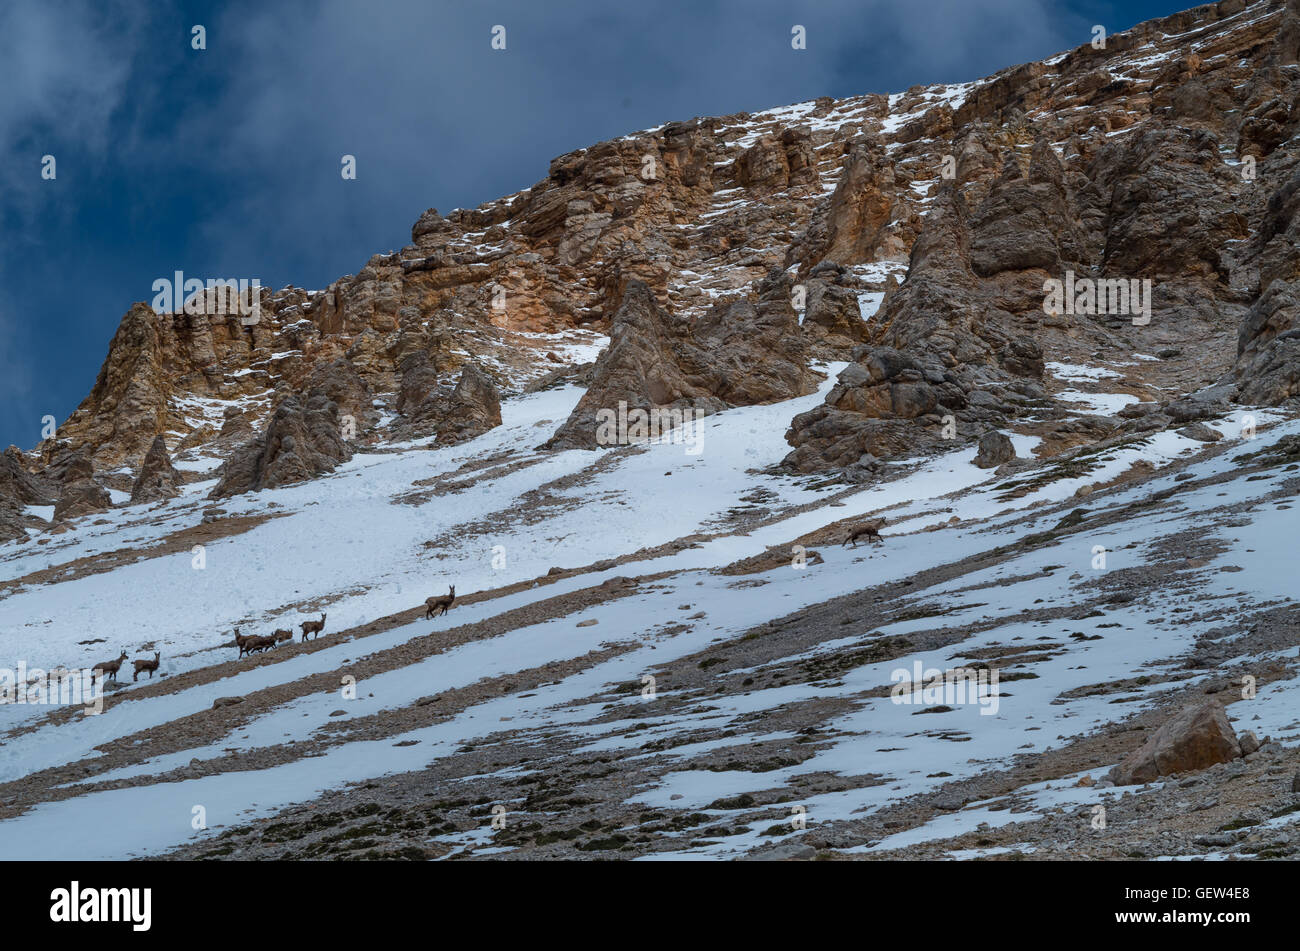 Groupe de jeunes chèvre de montagne au printemps, Dolomites Tyrol du Sud, Italie Banque D'Images